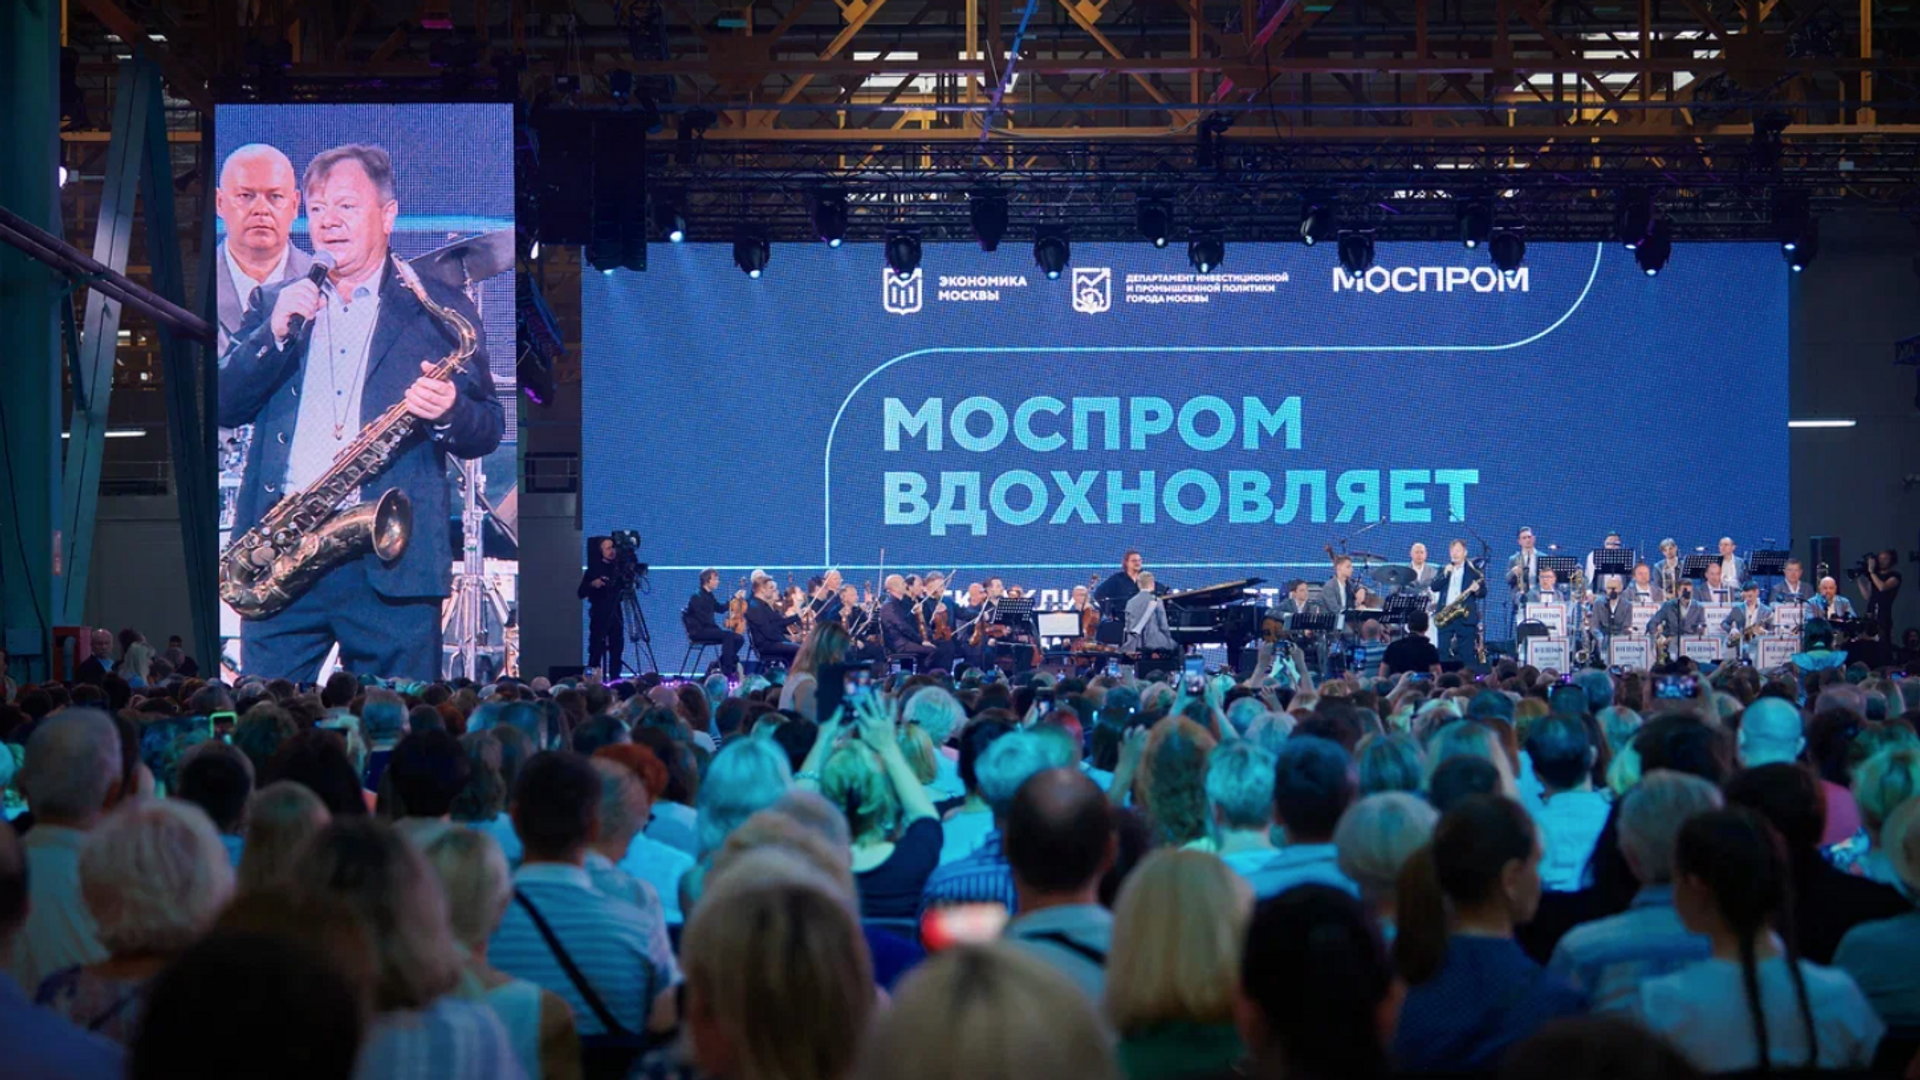 Моспром вдохновляет собрал более 6 тысяч зрителей - РИА Новости, 1920, 25.08.2022